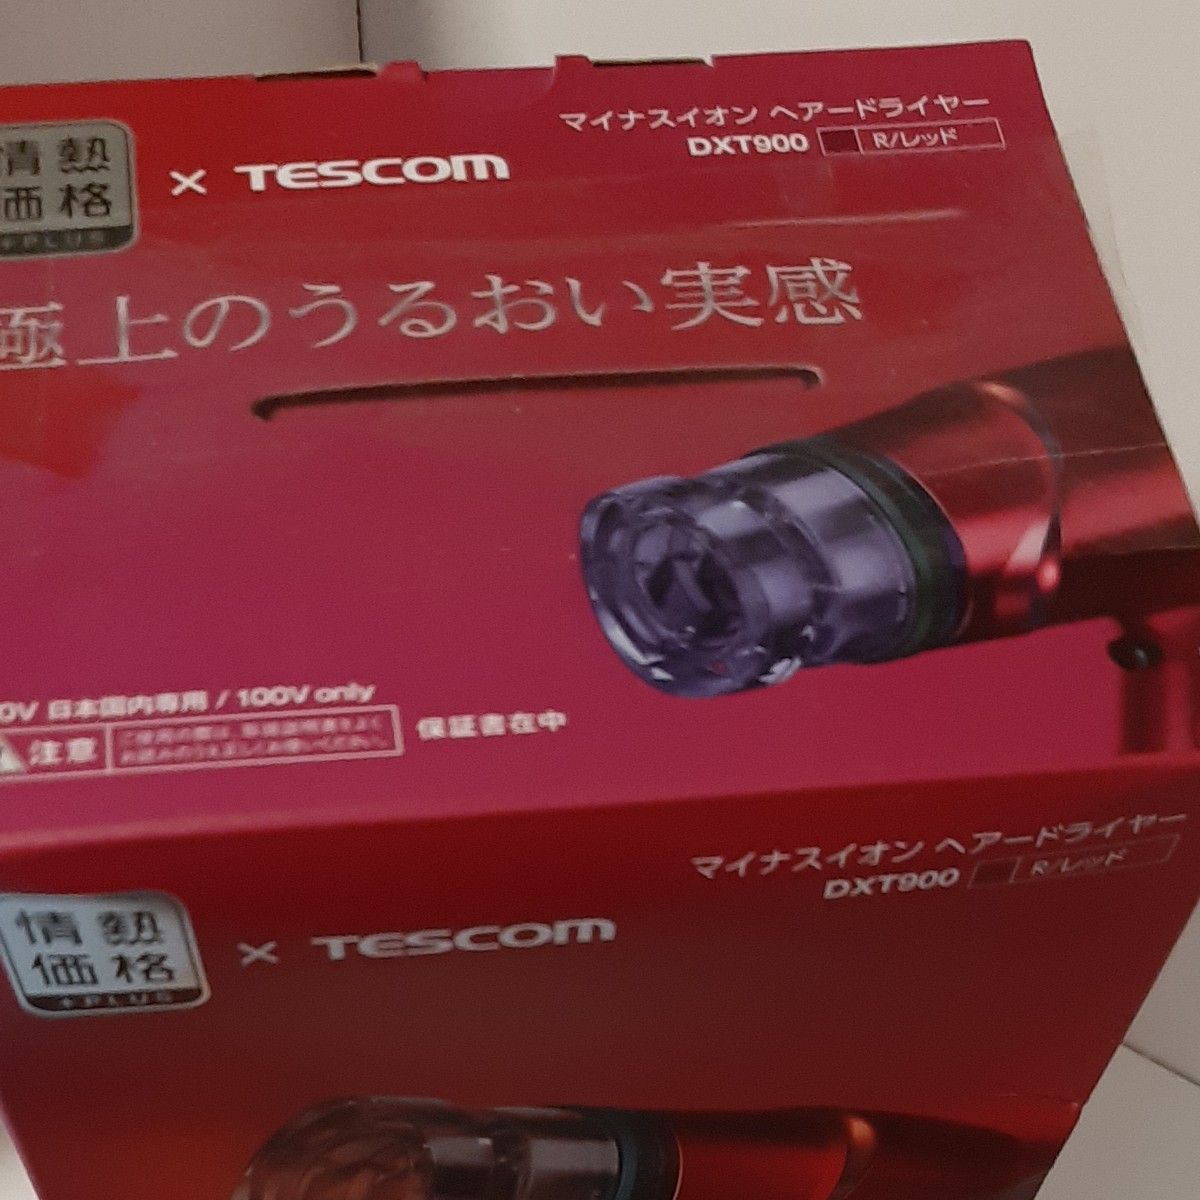 TESCOM マイナスイオンヘアードライヤー DXT900 R レッド